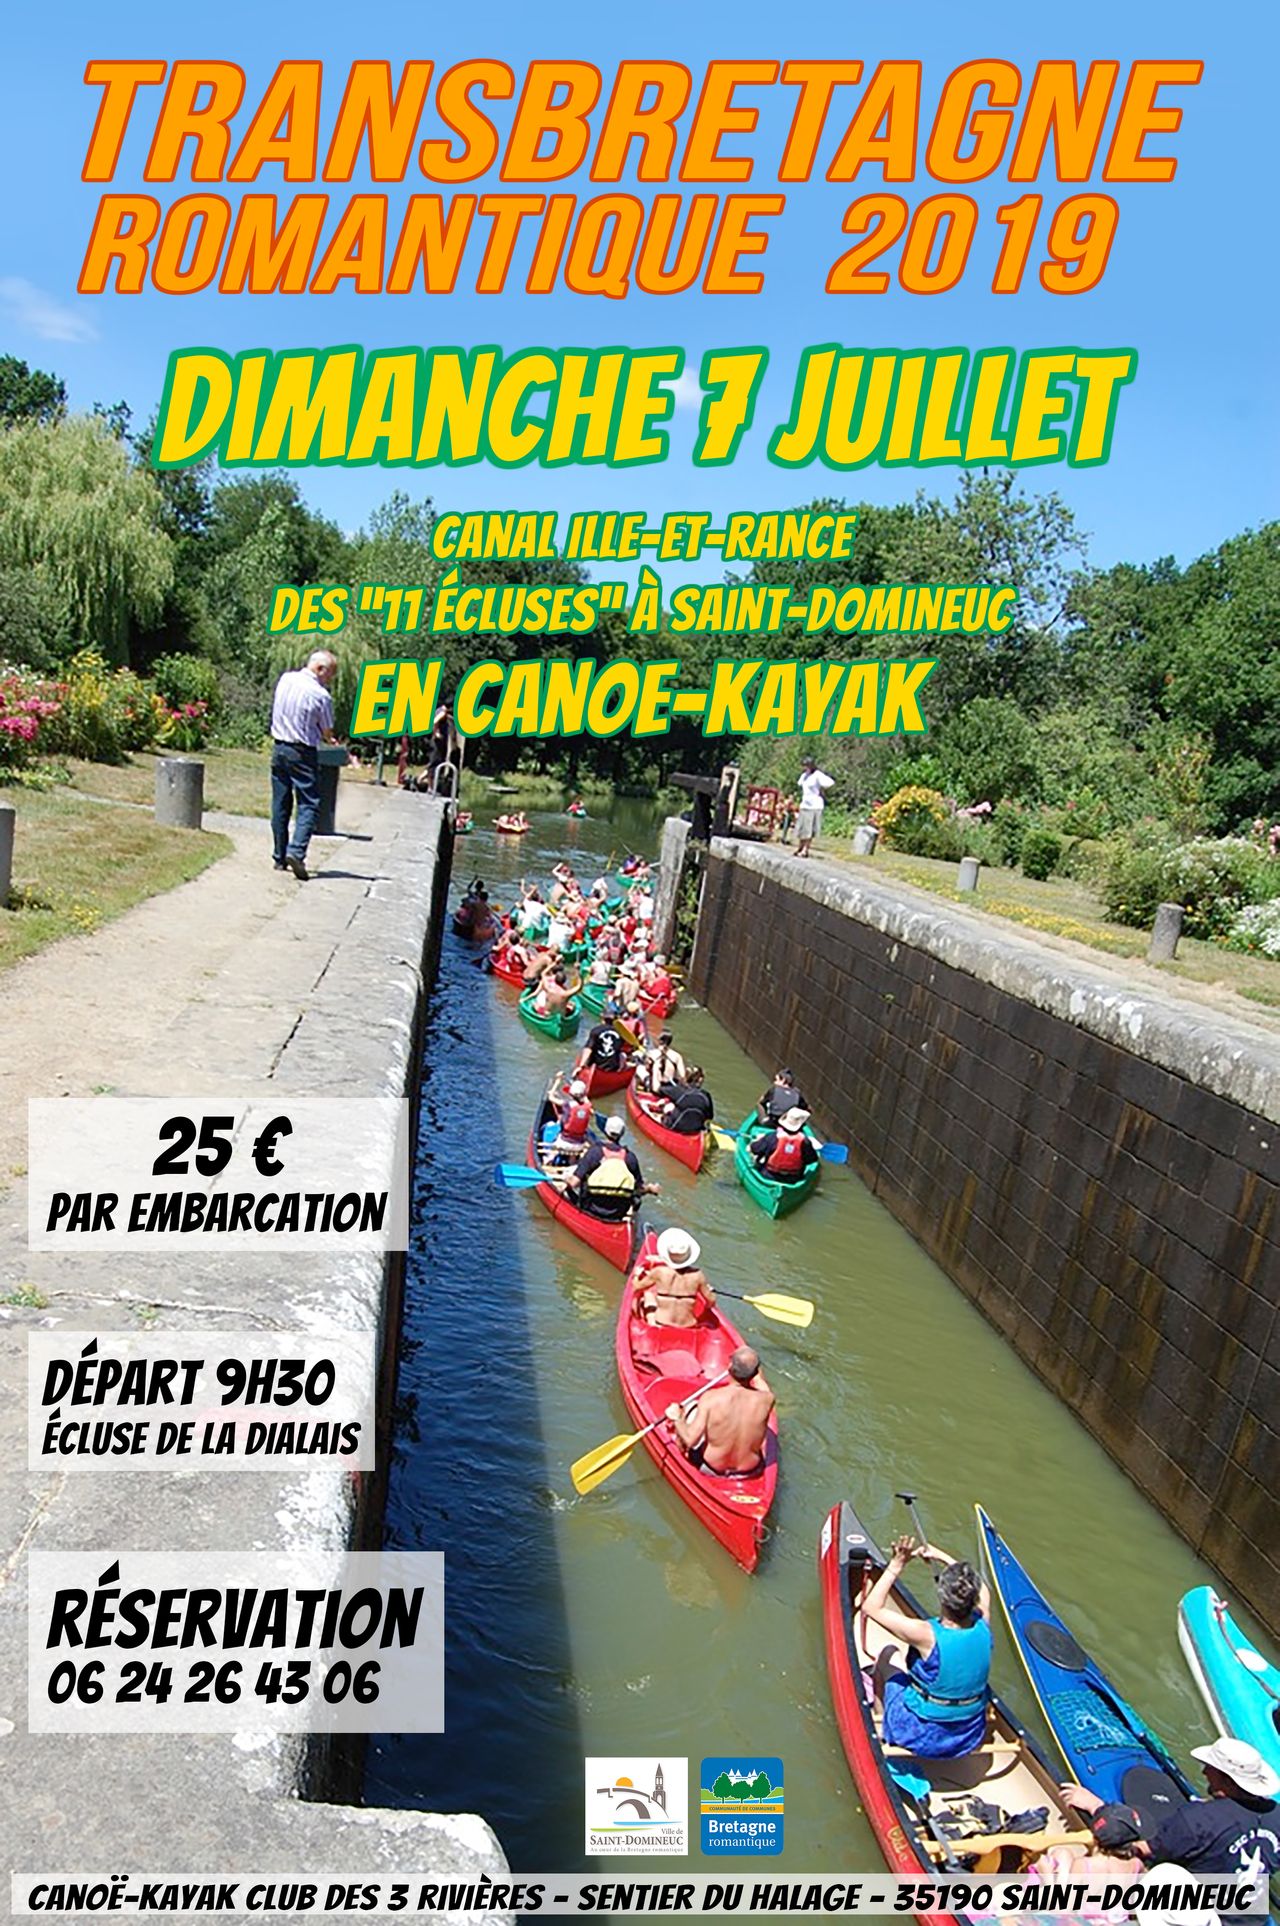 Transbretagne romantique dimanche 7 juillet 2019 - Des "11 écluses" à Saint-Domineuc en canoë-kayak